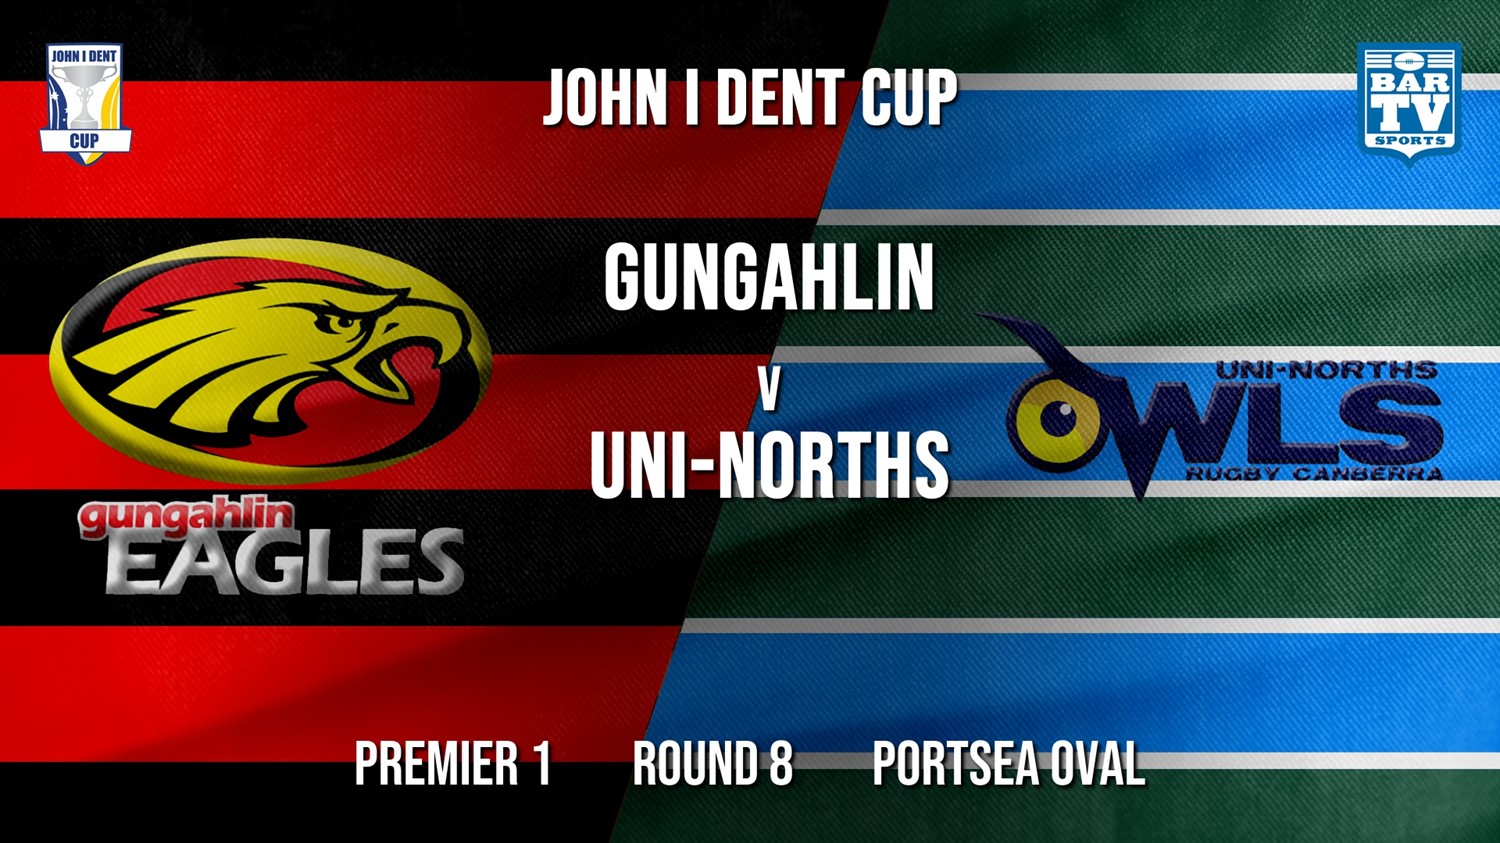 John I Dent Round 8 - Premier 1 - Gungahlin Eagles v UNI-Norths Minigame Slate Image